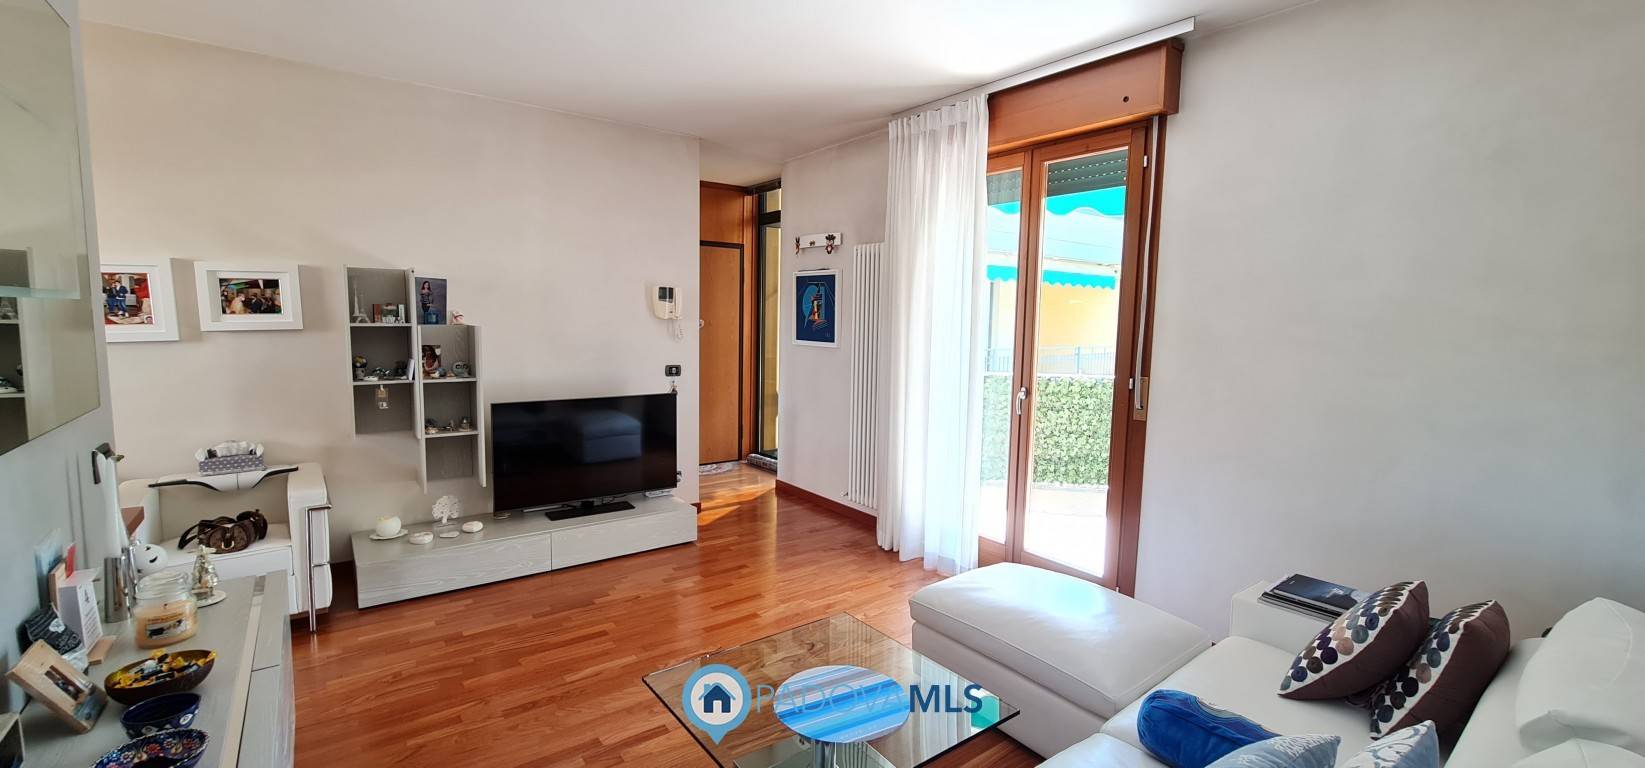 Appartamento in vendita a Abano Terme, 3 locali, prezzo € 206.000 | PortaleAgenzieImmobiliari.it